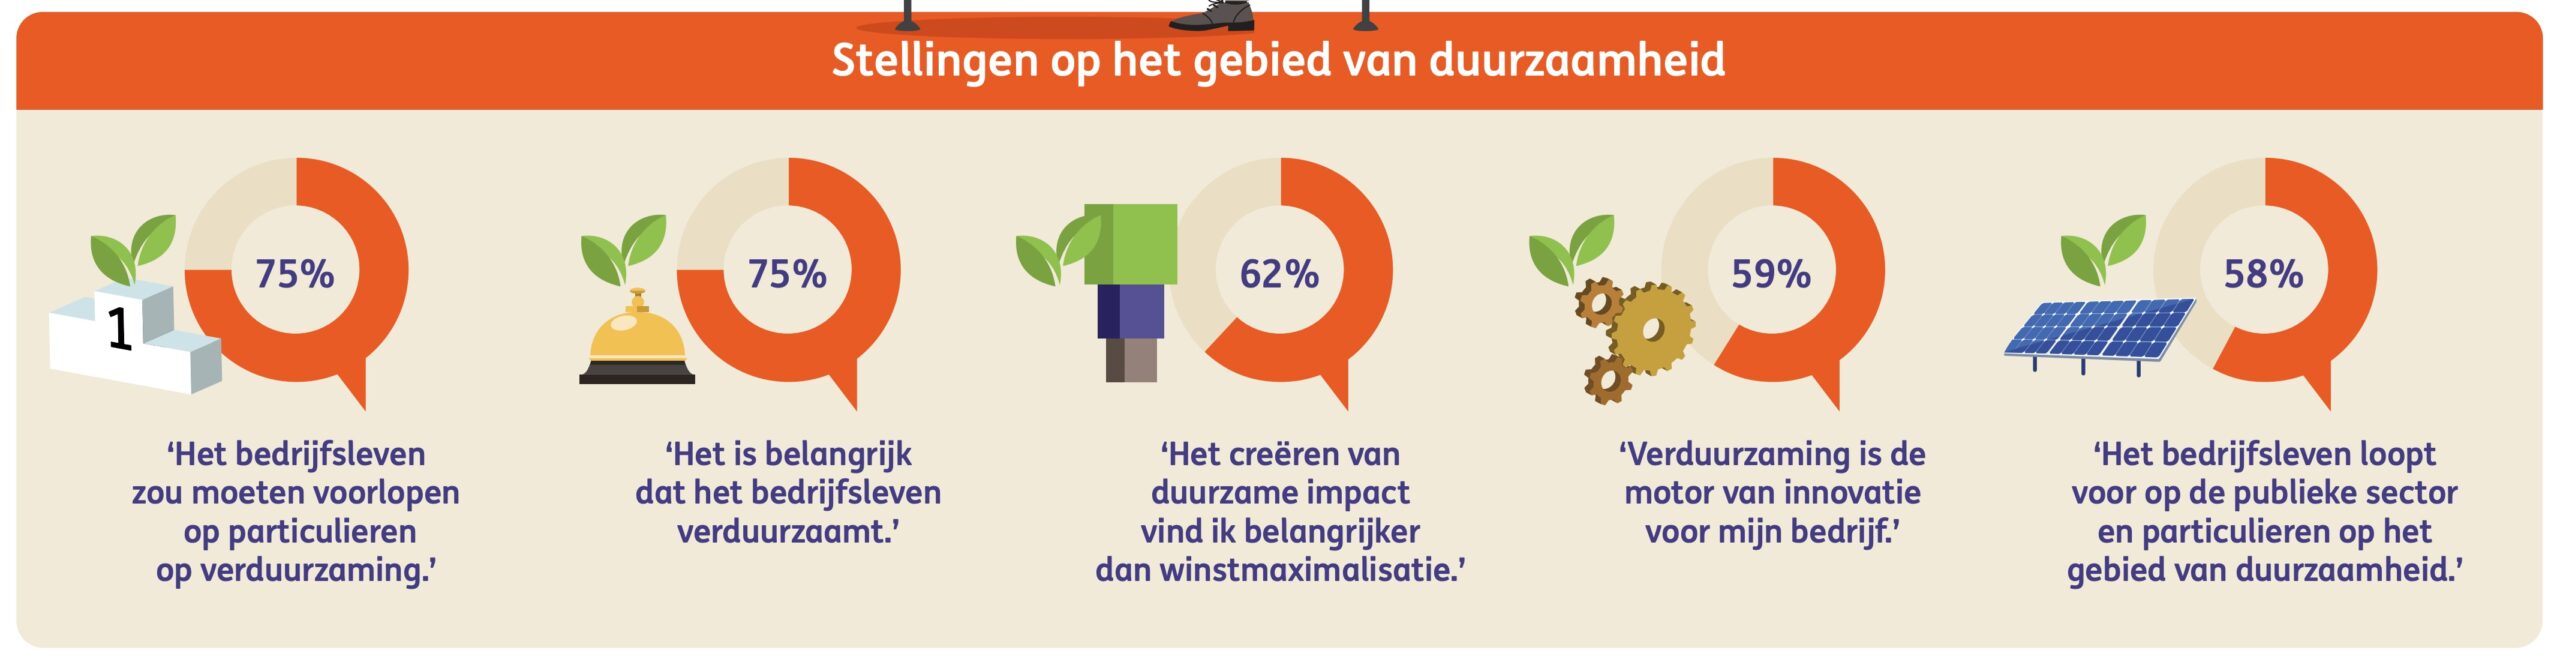 Nederlandse bedrijven beoordelen stellingen op het gebied van duurzaamheid. Bron: ING